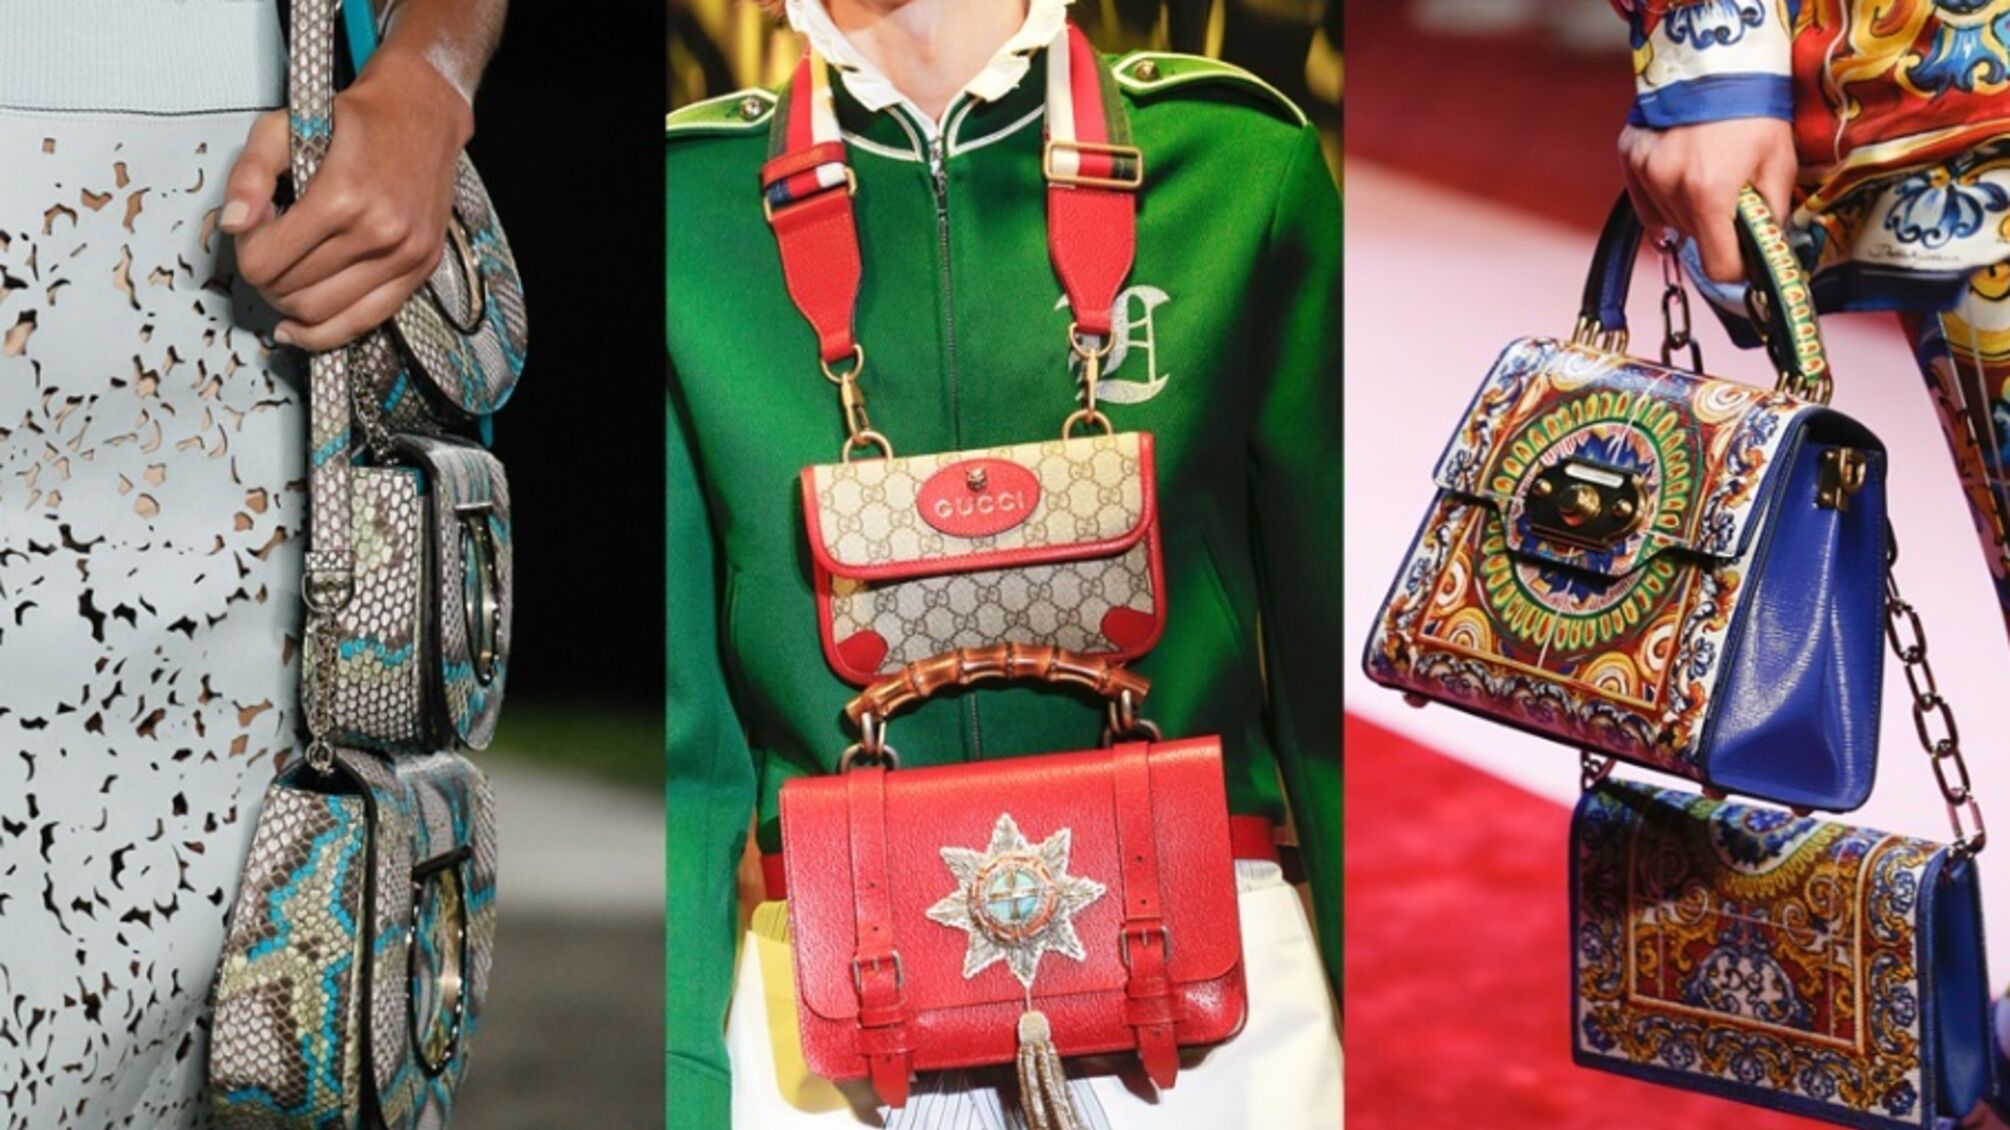 Две сумки на одну модницу: новый тренд в мире моды